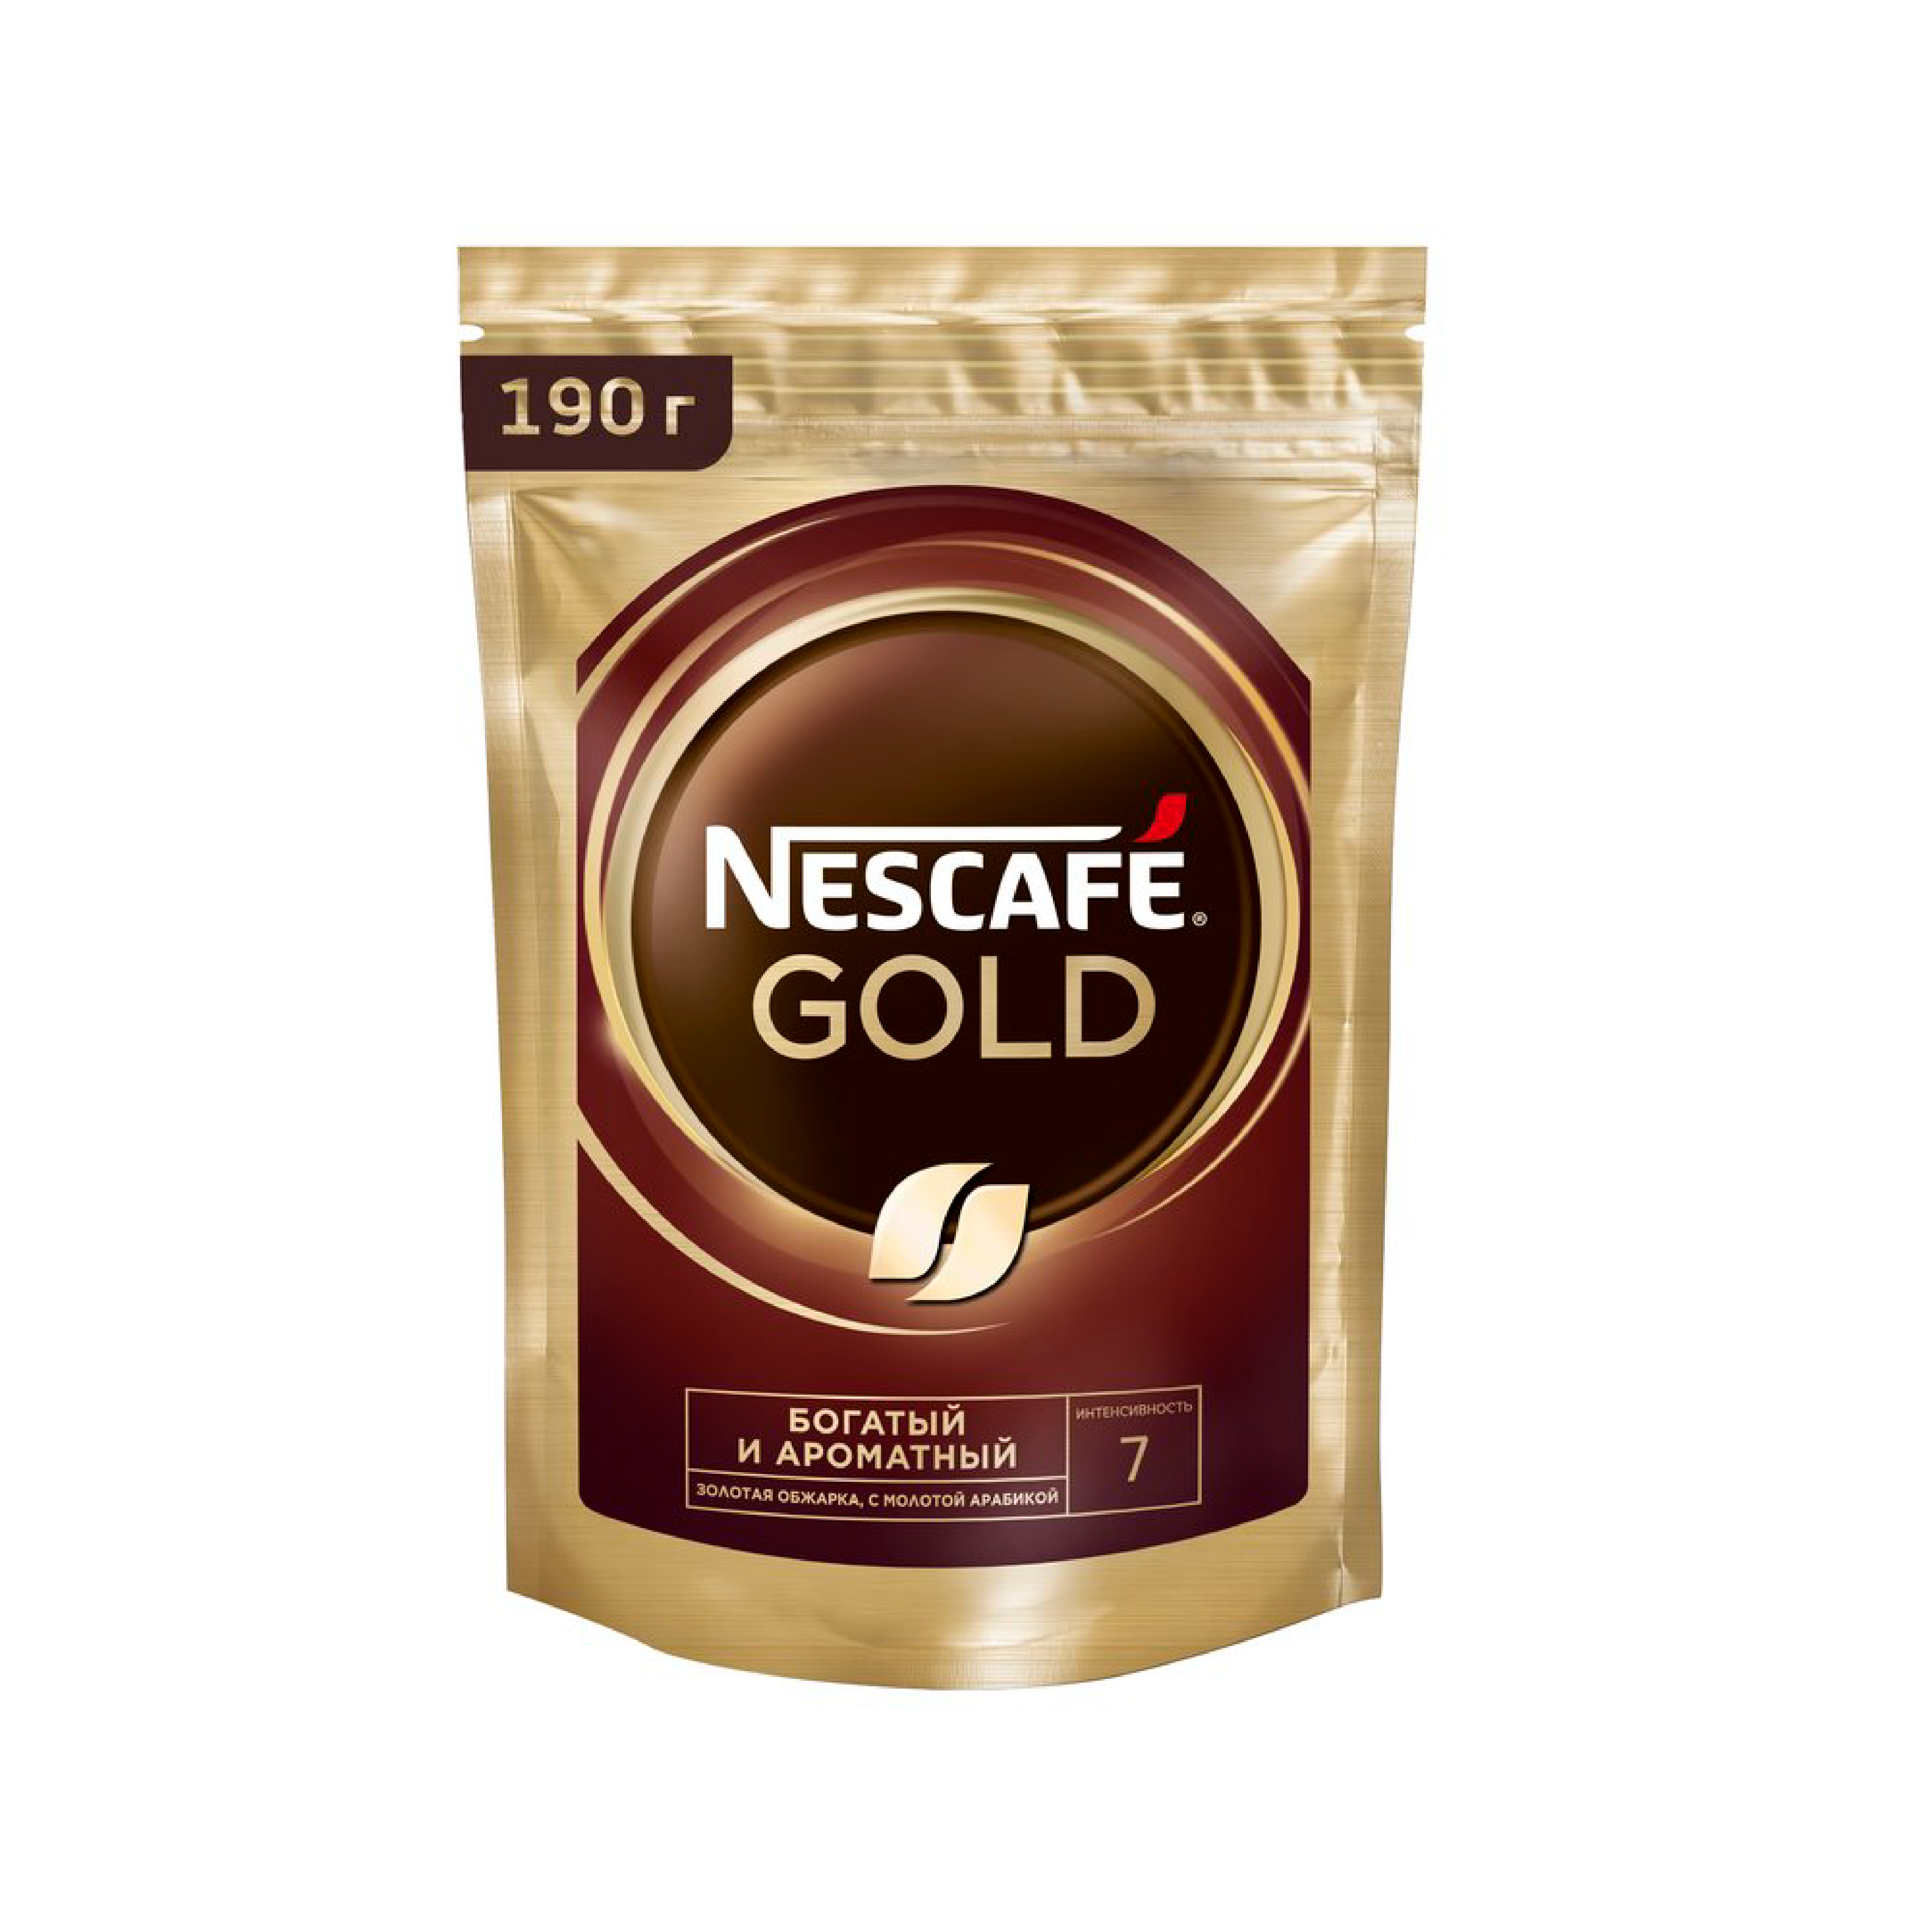 Упаковка кофе нескафе. Кофе Нескафе Голд 900 гр. Nescafe кофе Gold 900г.. Кофе Нескафе Голд 900гр м.у. Кофе растворимый Nescafe Gold 900 гр.